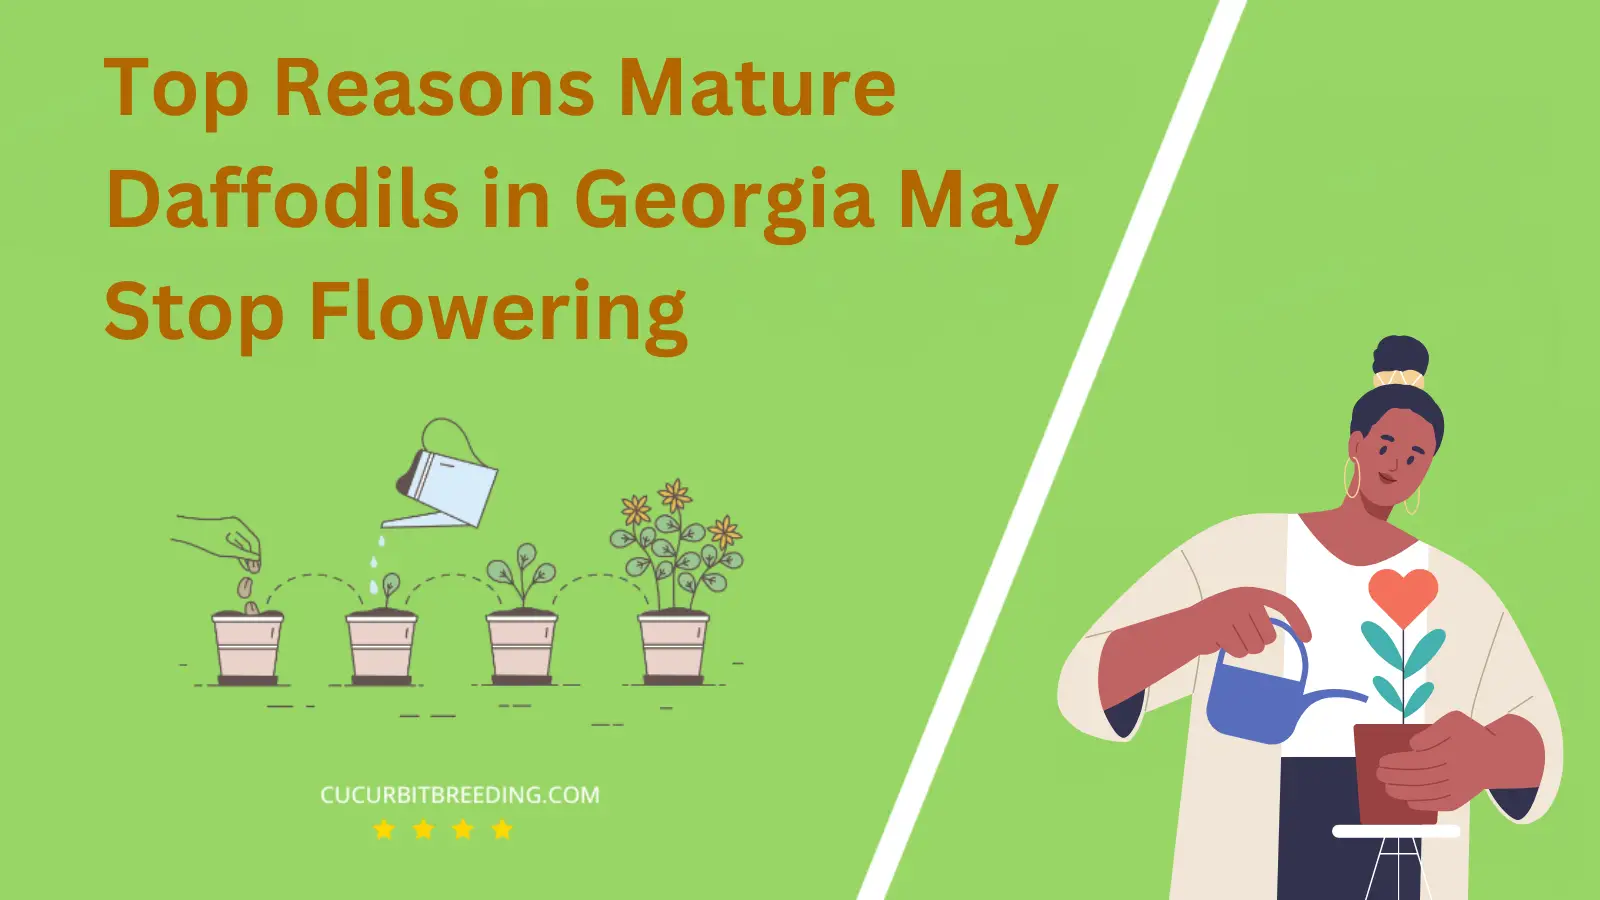 Top Reasons Mature Daffodils in Georgia May Stop Flowering